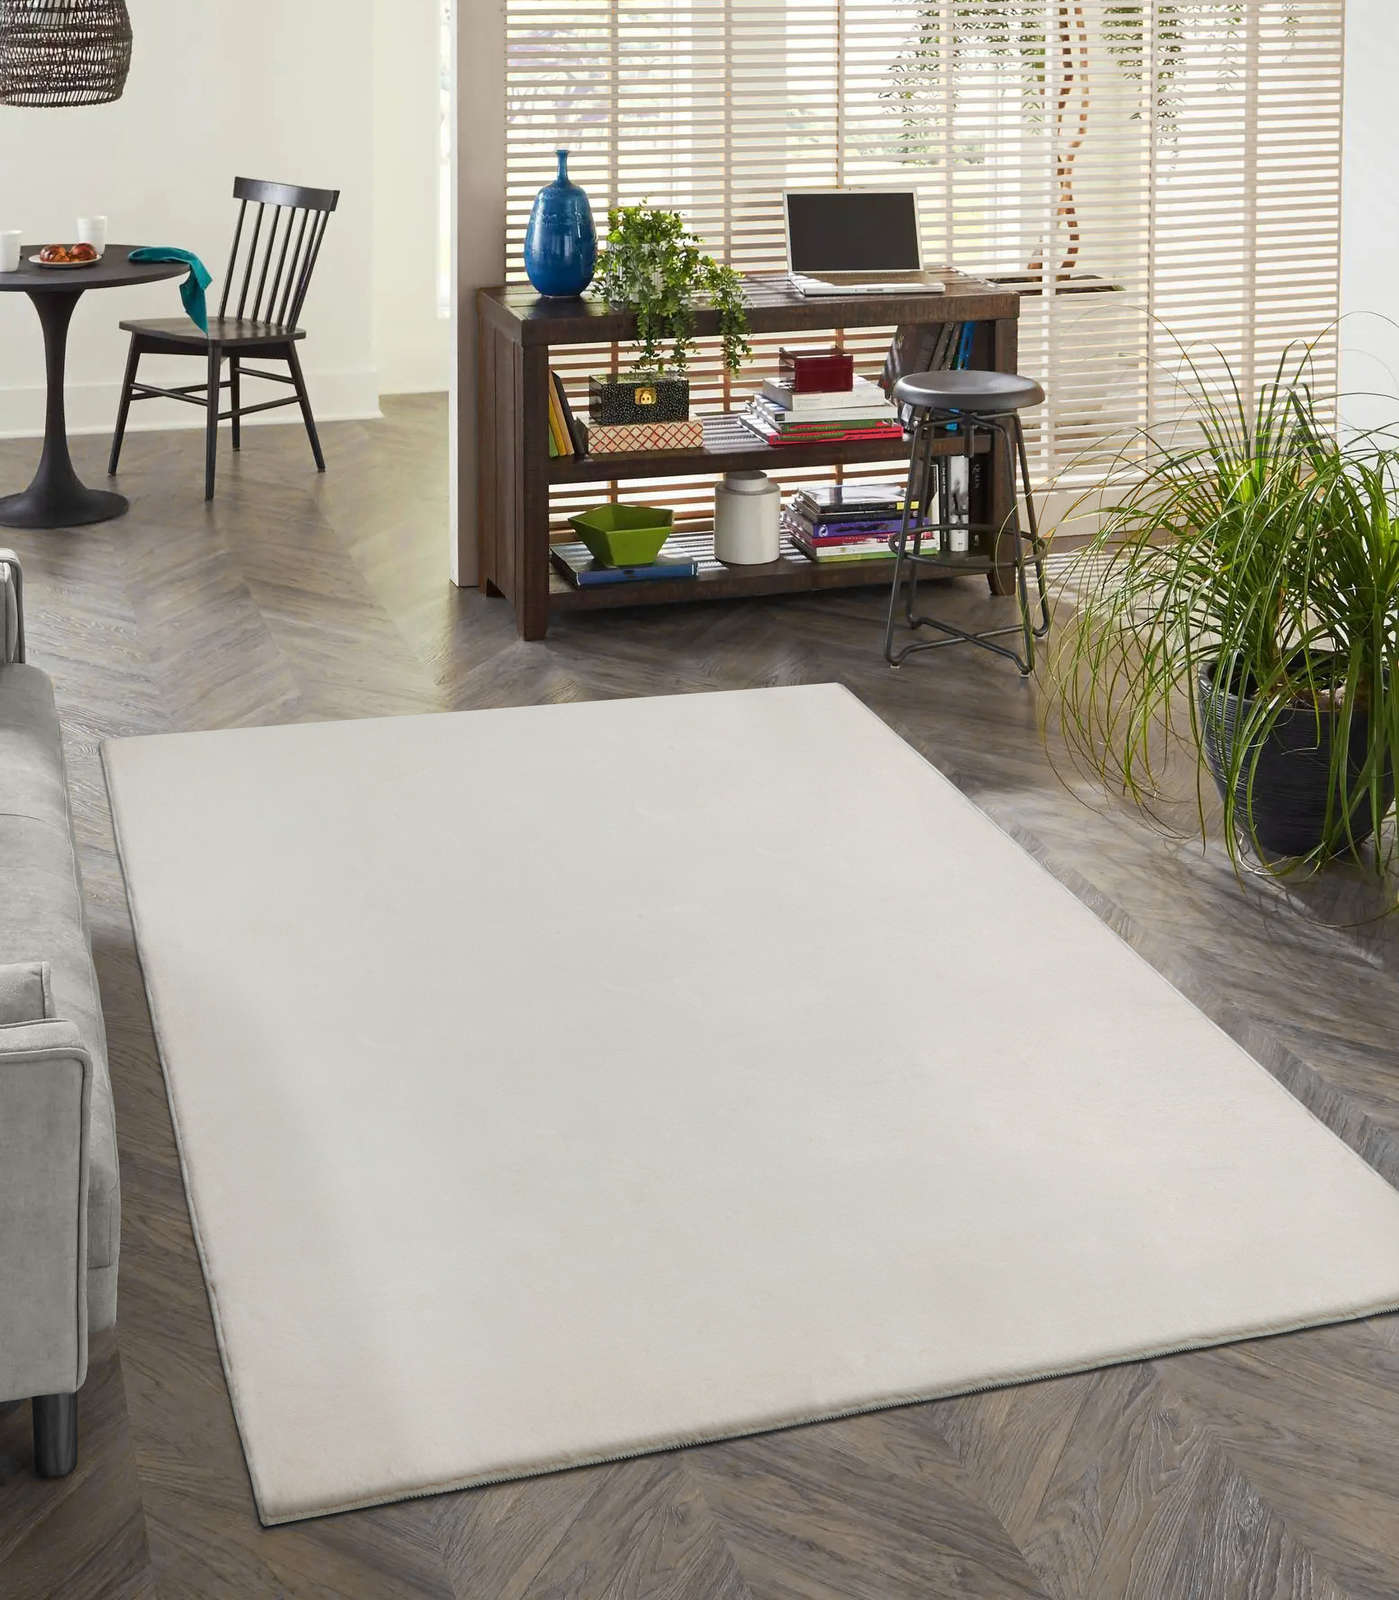             Zacht hoogpolig tapijt in crème - 220 x 160 cm
        